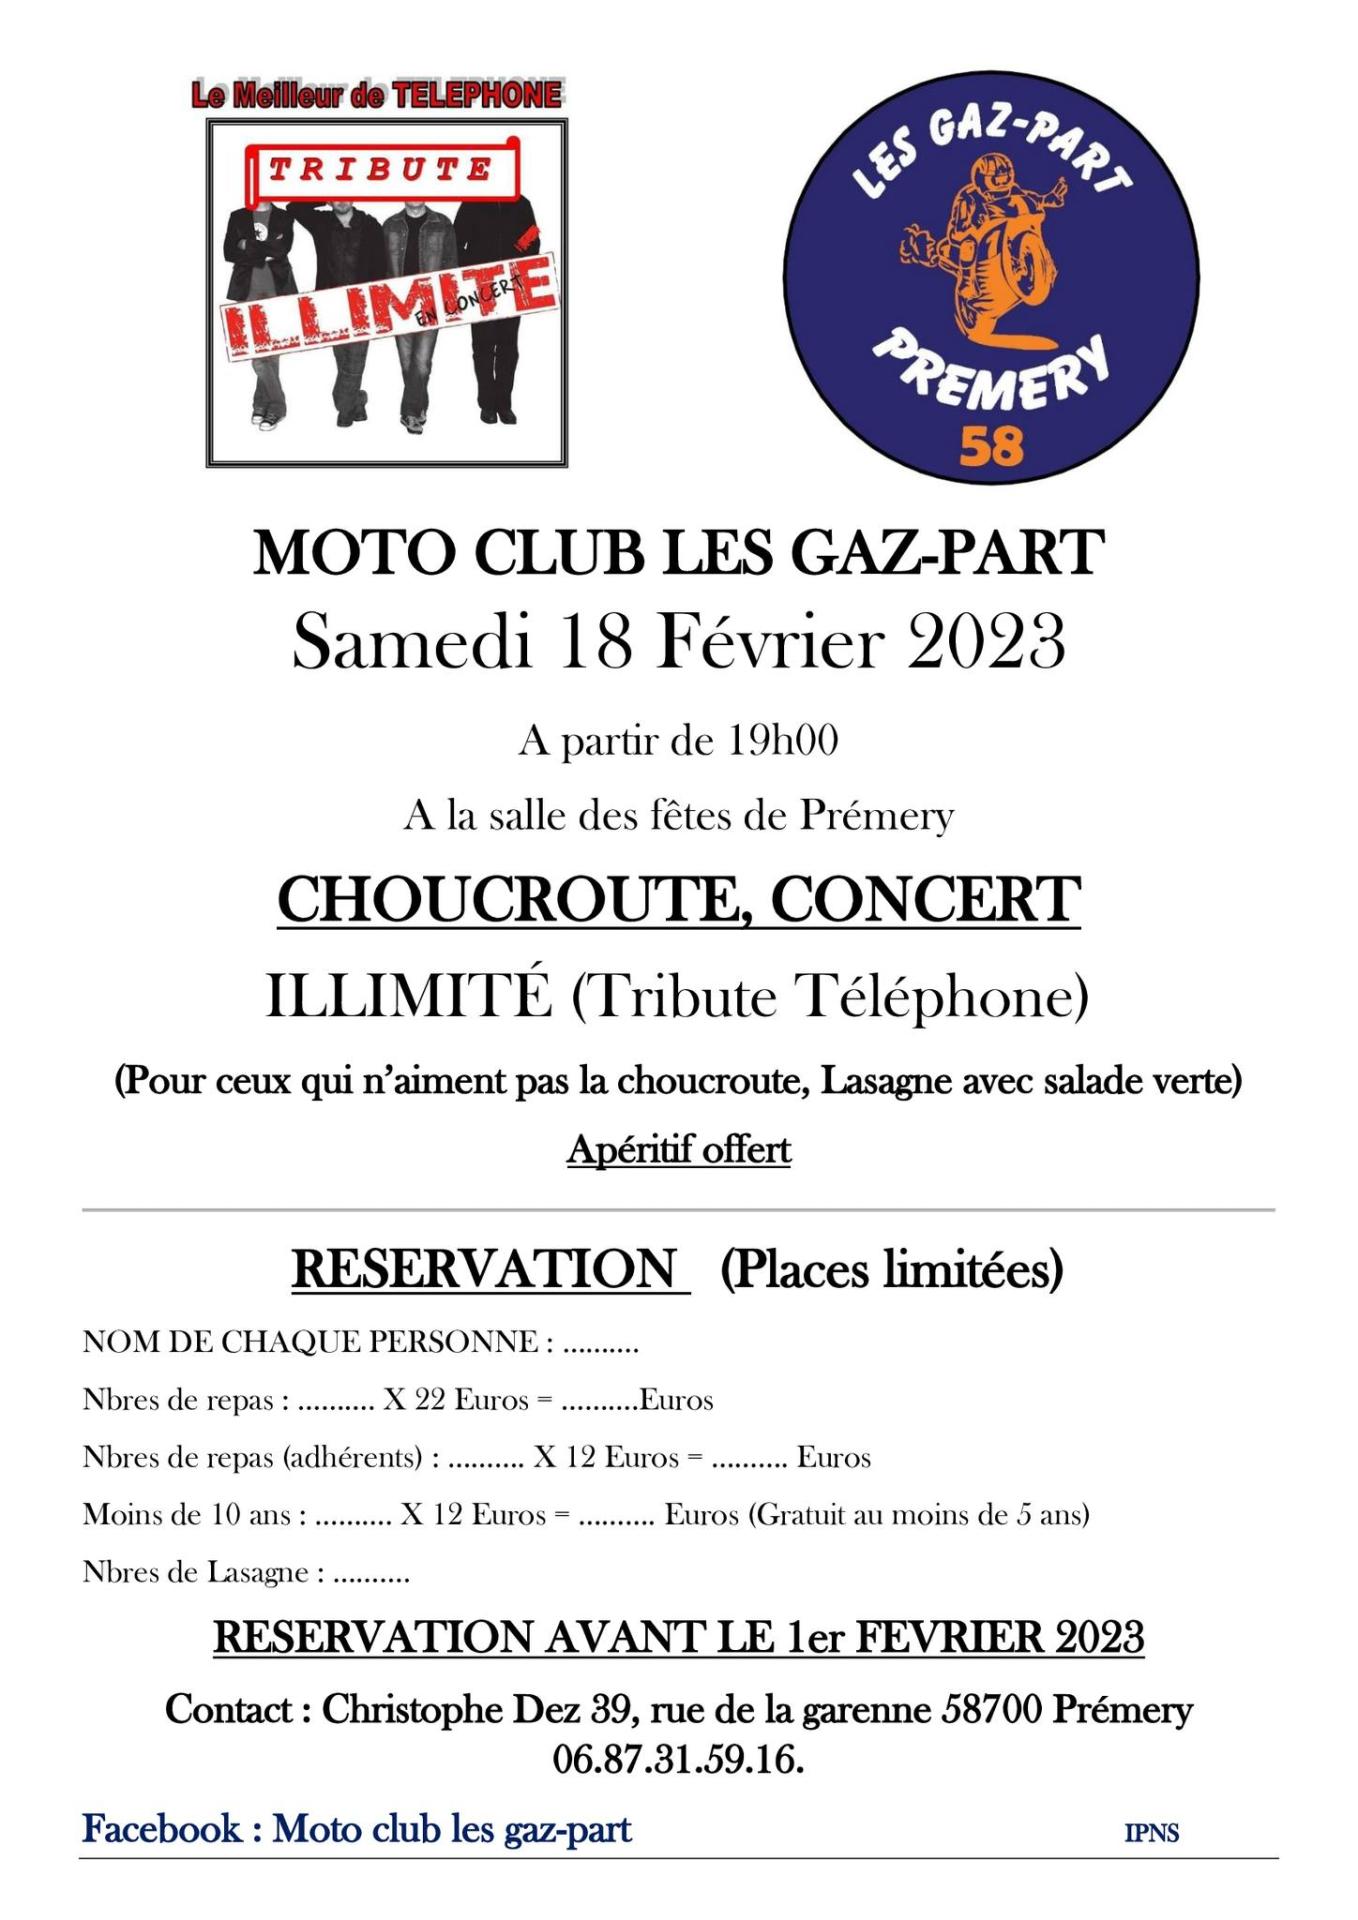 affiche annonçant la choucroute-concert des Gaz-part